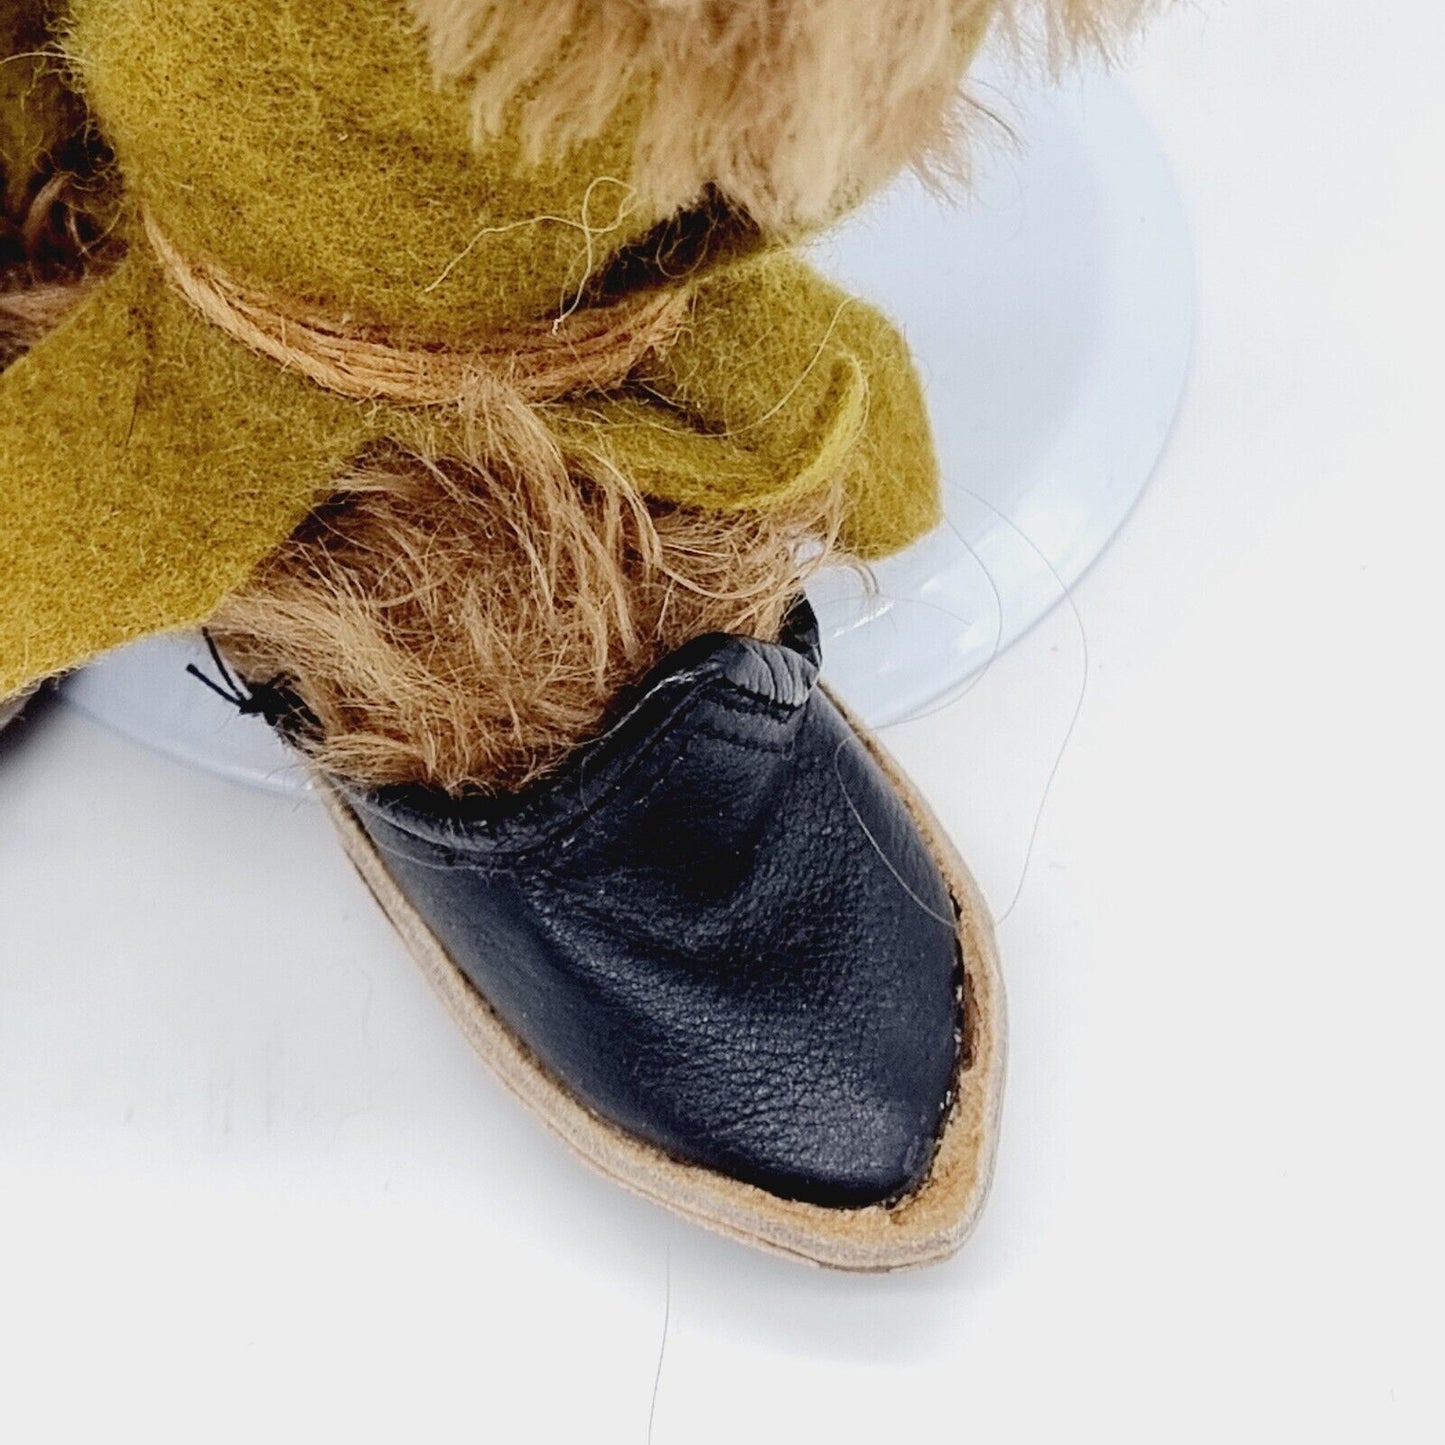 Clemens Teddybär 28 cm braun mit grüner Hose, schwarzen Schuhen und Zipfelmütze